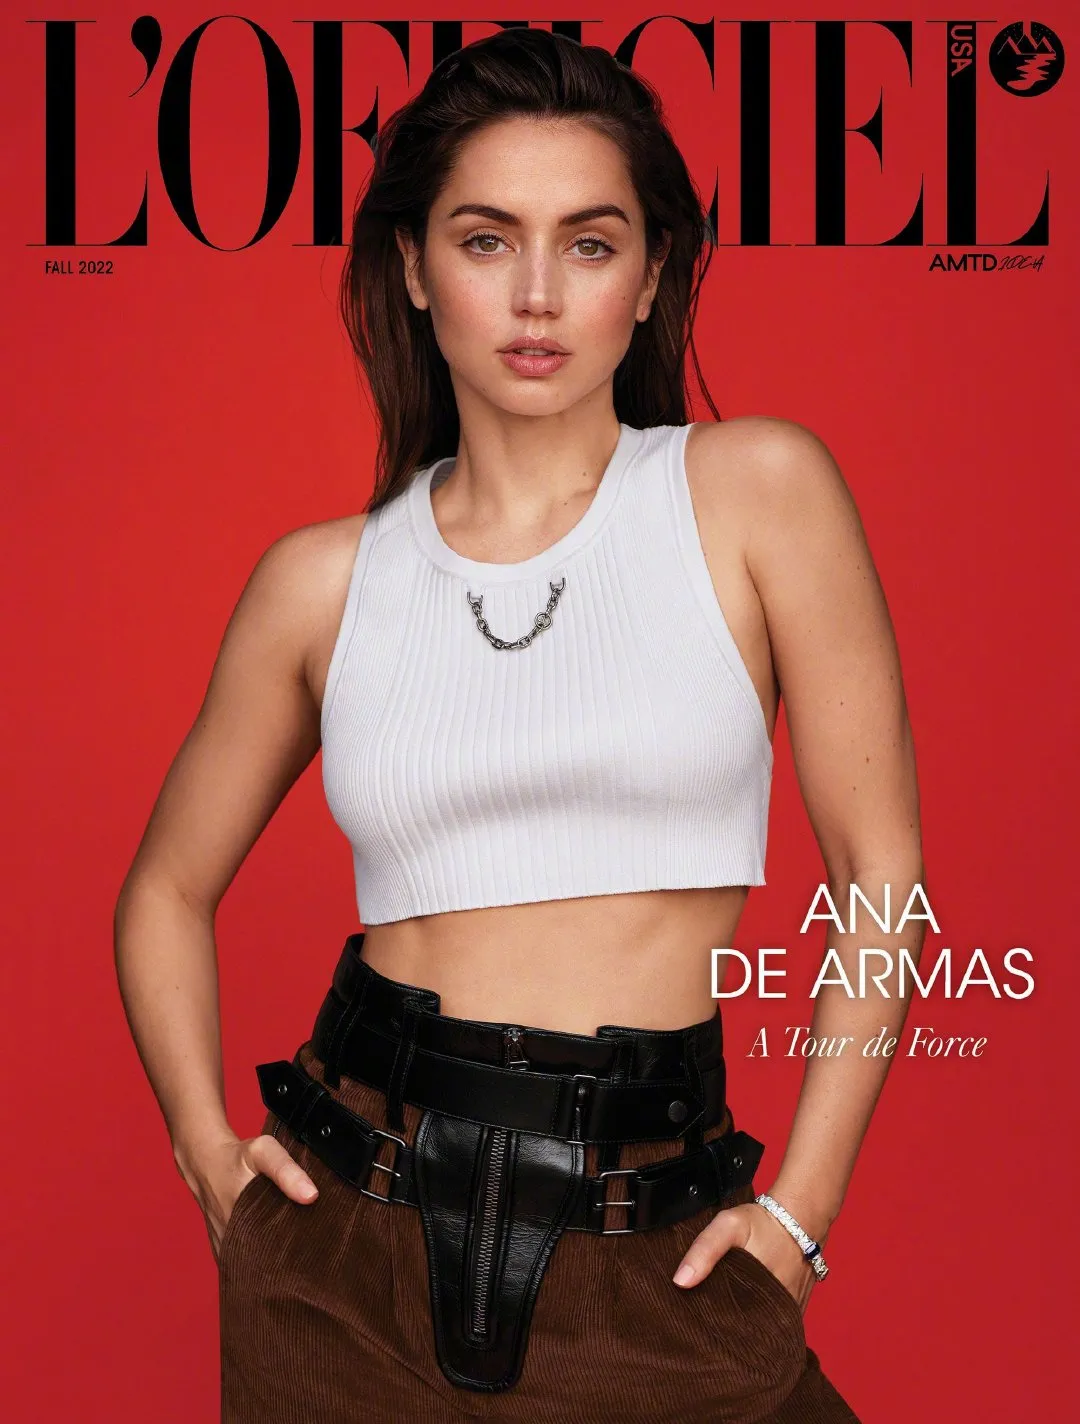 Ana de Armas, 'L'Officiel' fall photo shoot | FMV6